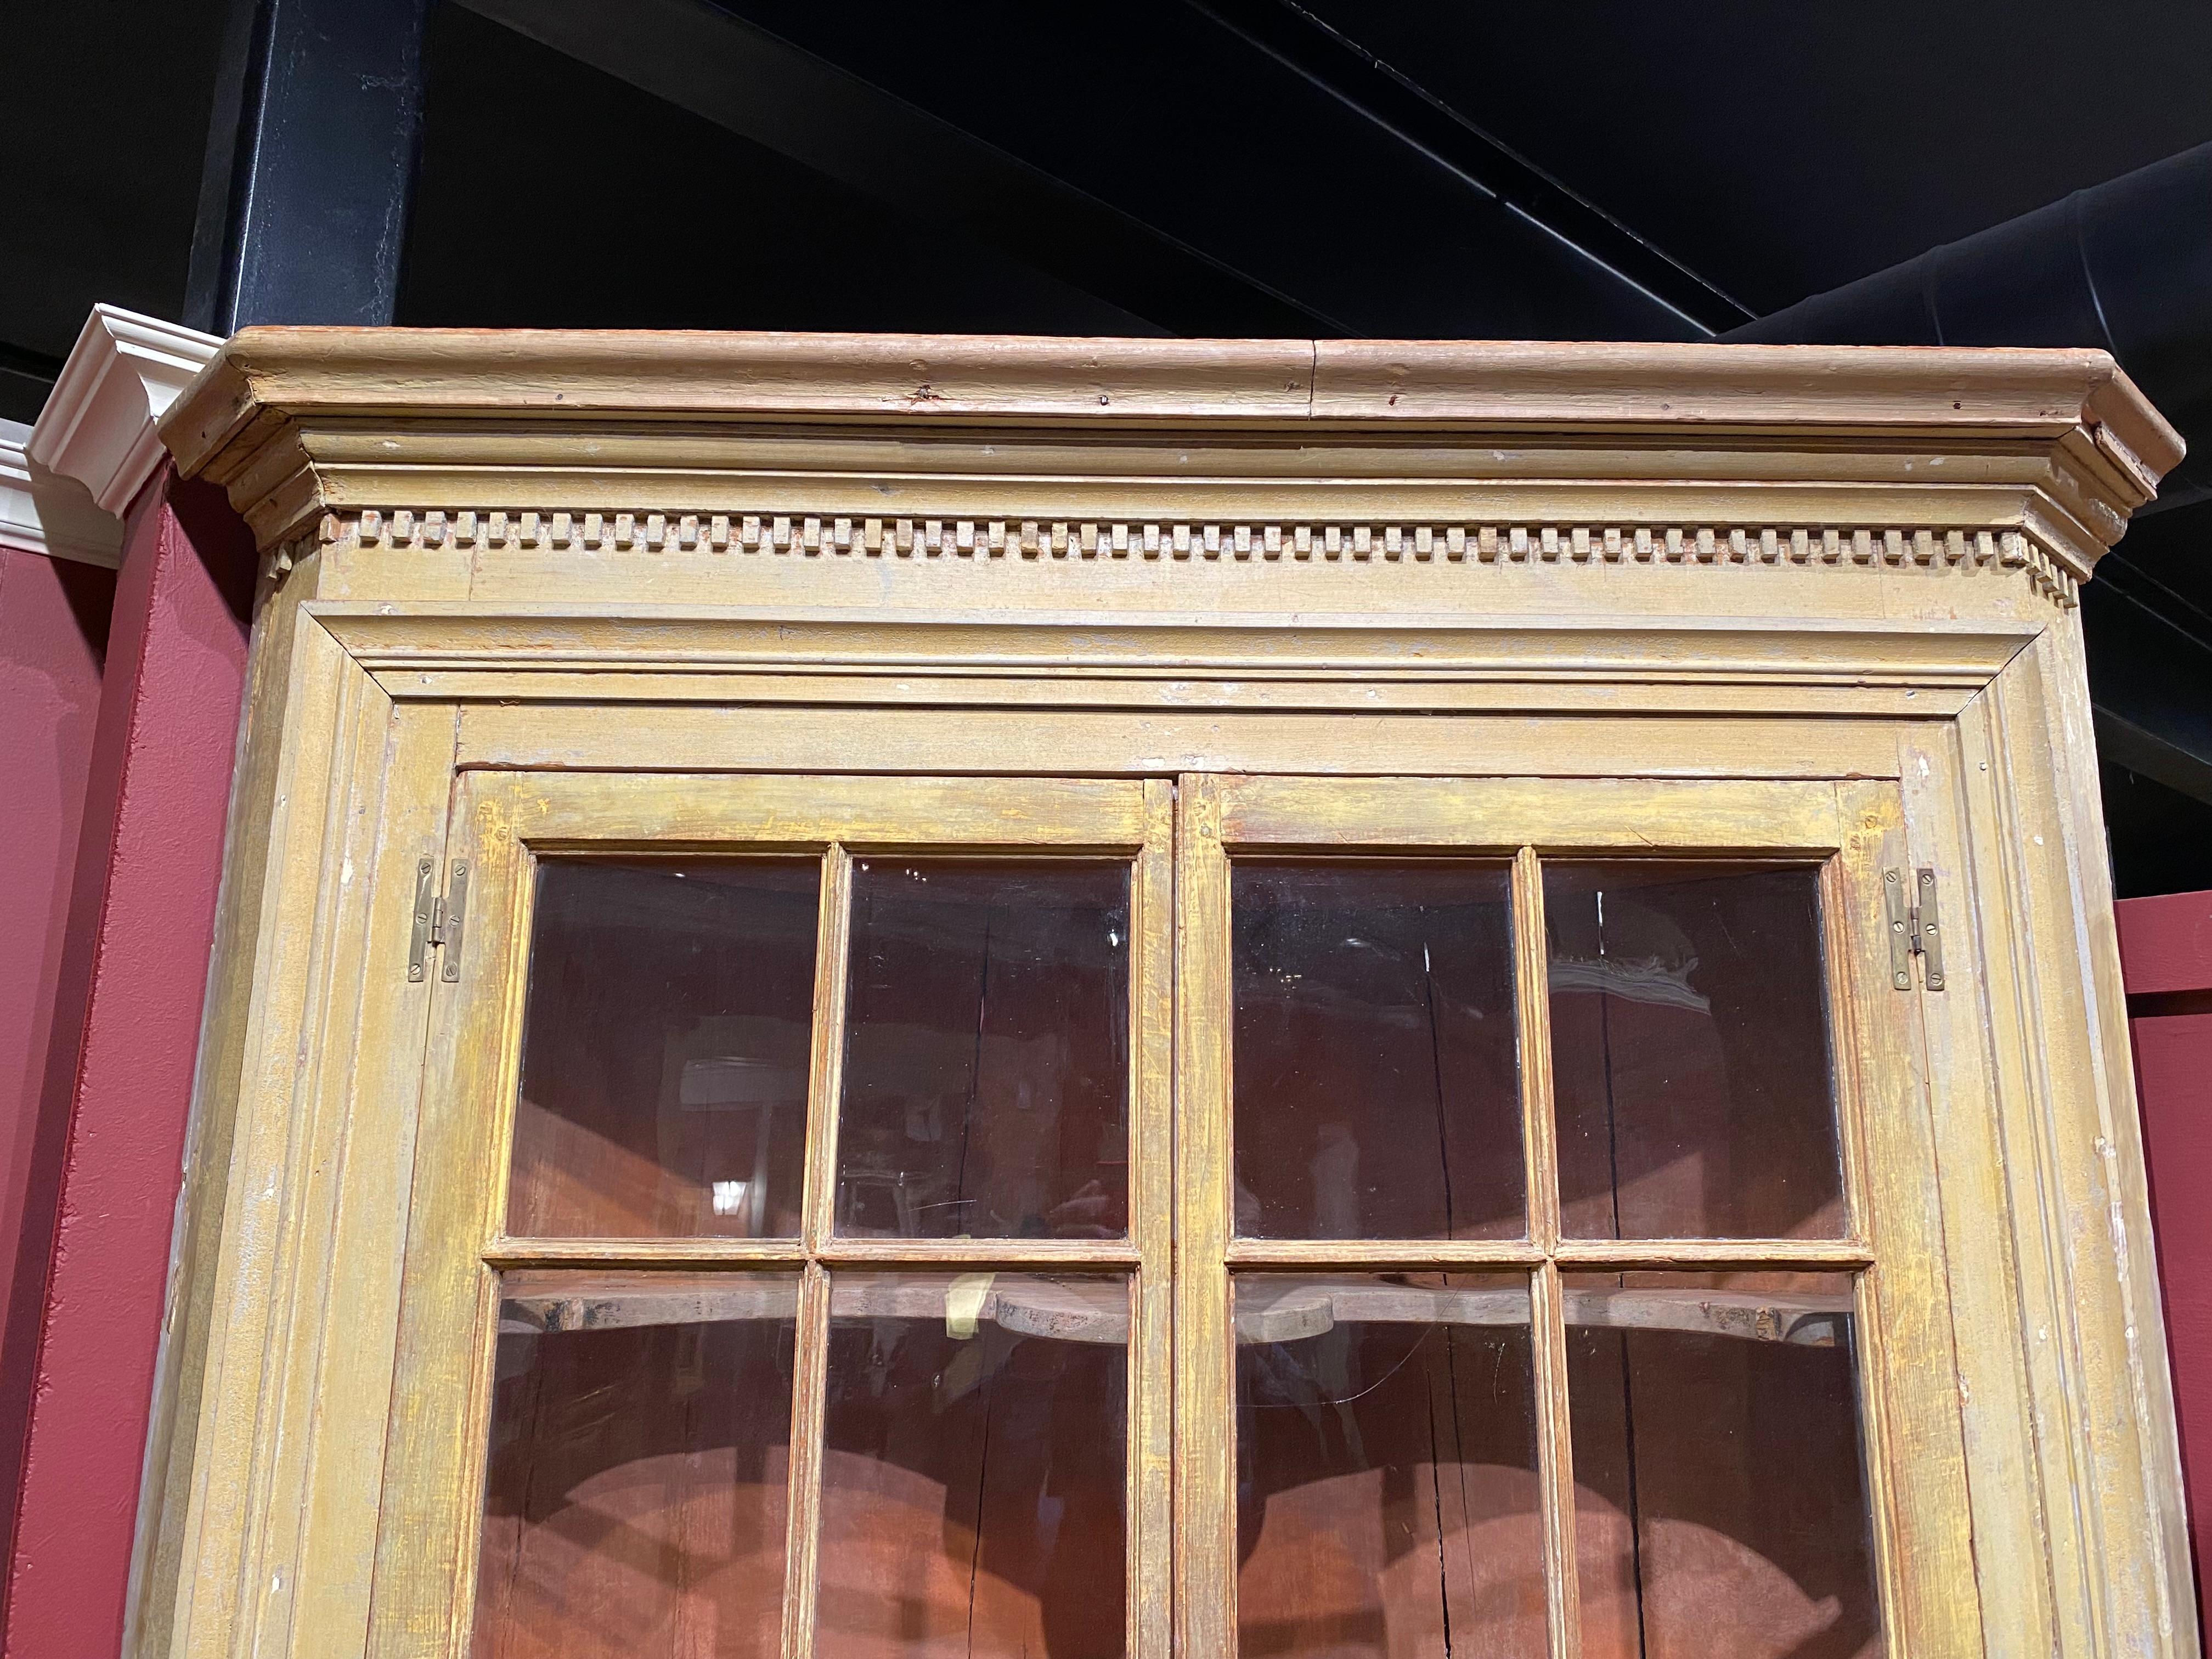 Un bel exemple d'armoire d'angle d'une seule pièce de la période fédérale de la Nouvelle-Angleterre avec un dossier en tonneau, une corniche moulurée avec une moulure en denticule surmontant deux portes supérieures en verre vitré à panneaux